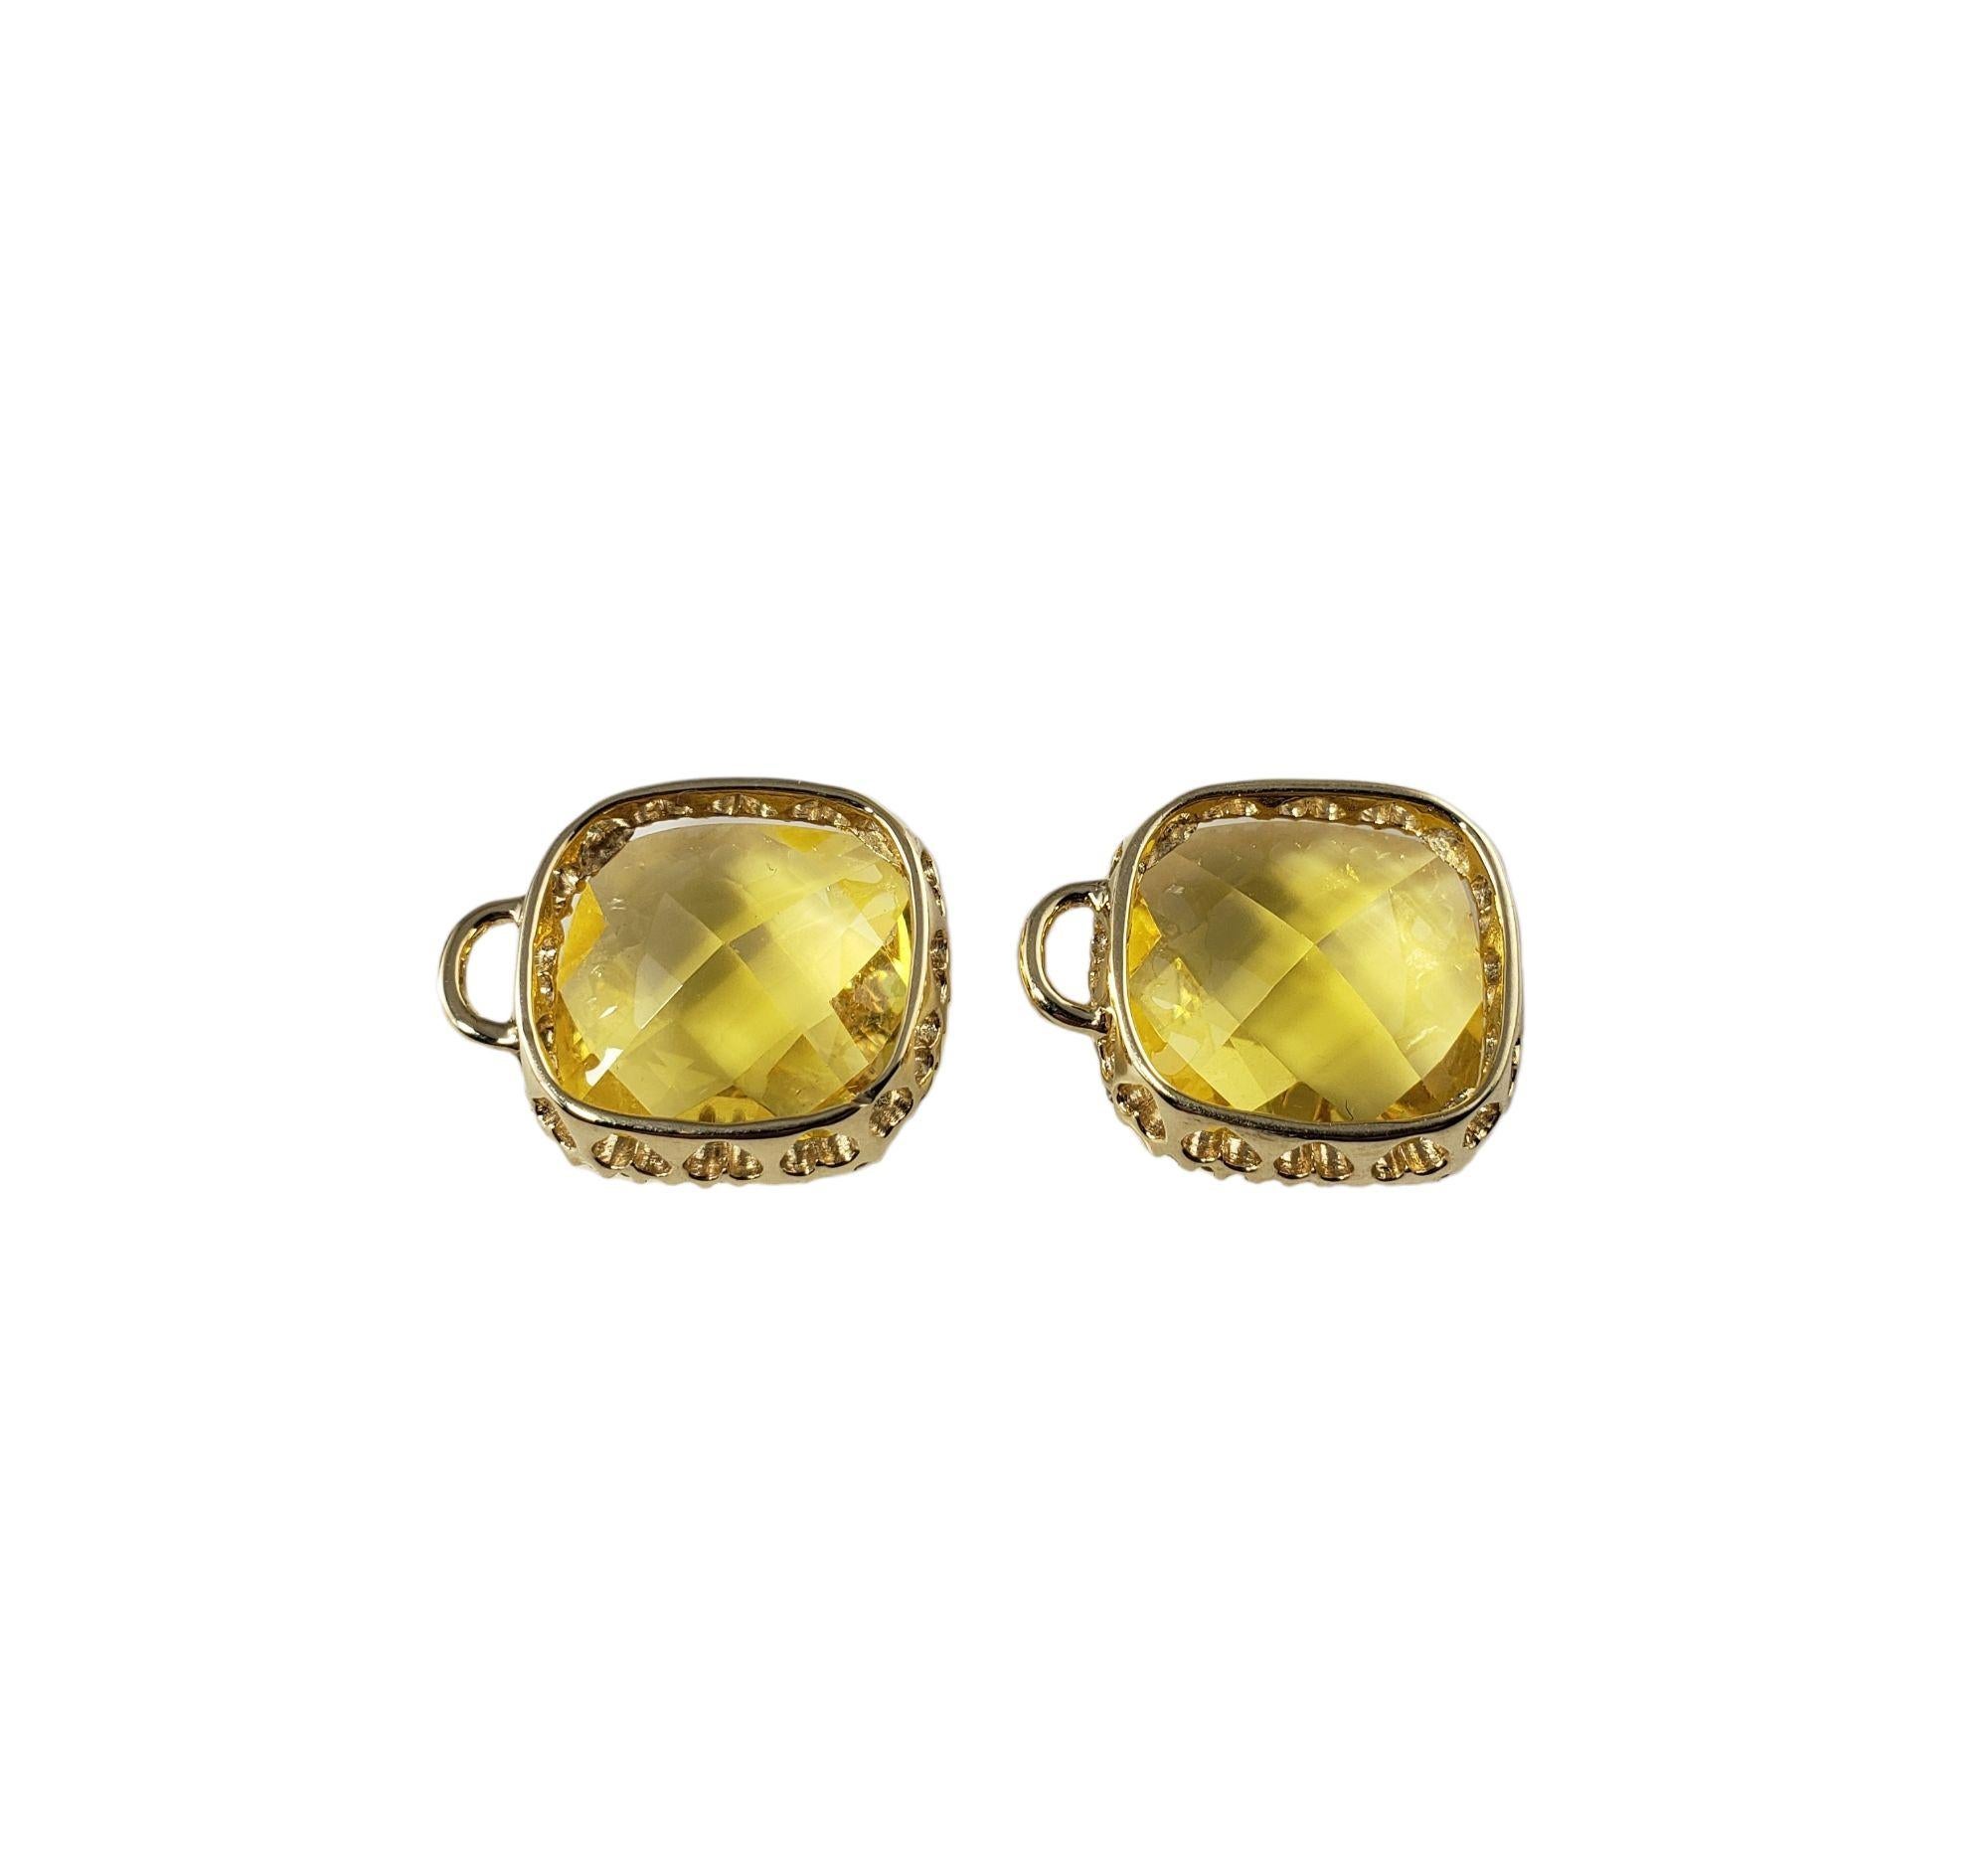 Vintage 14 Karat Yellow Gold Citrine and Diamond Earring Enhancers JAGi Certified-

Ces élégants rehausseurs de boucles d'oreilles comportent chacun une citrine carrée taillée en coussin.
(14 mm x 14 mm) et 36 diamants ronds de taille brillant